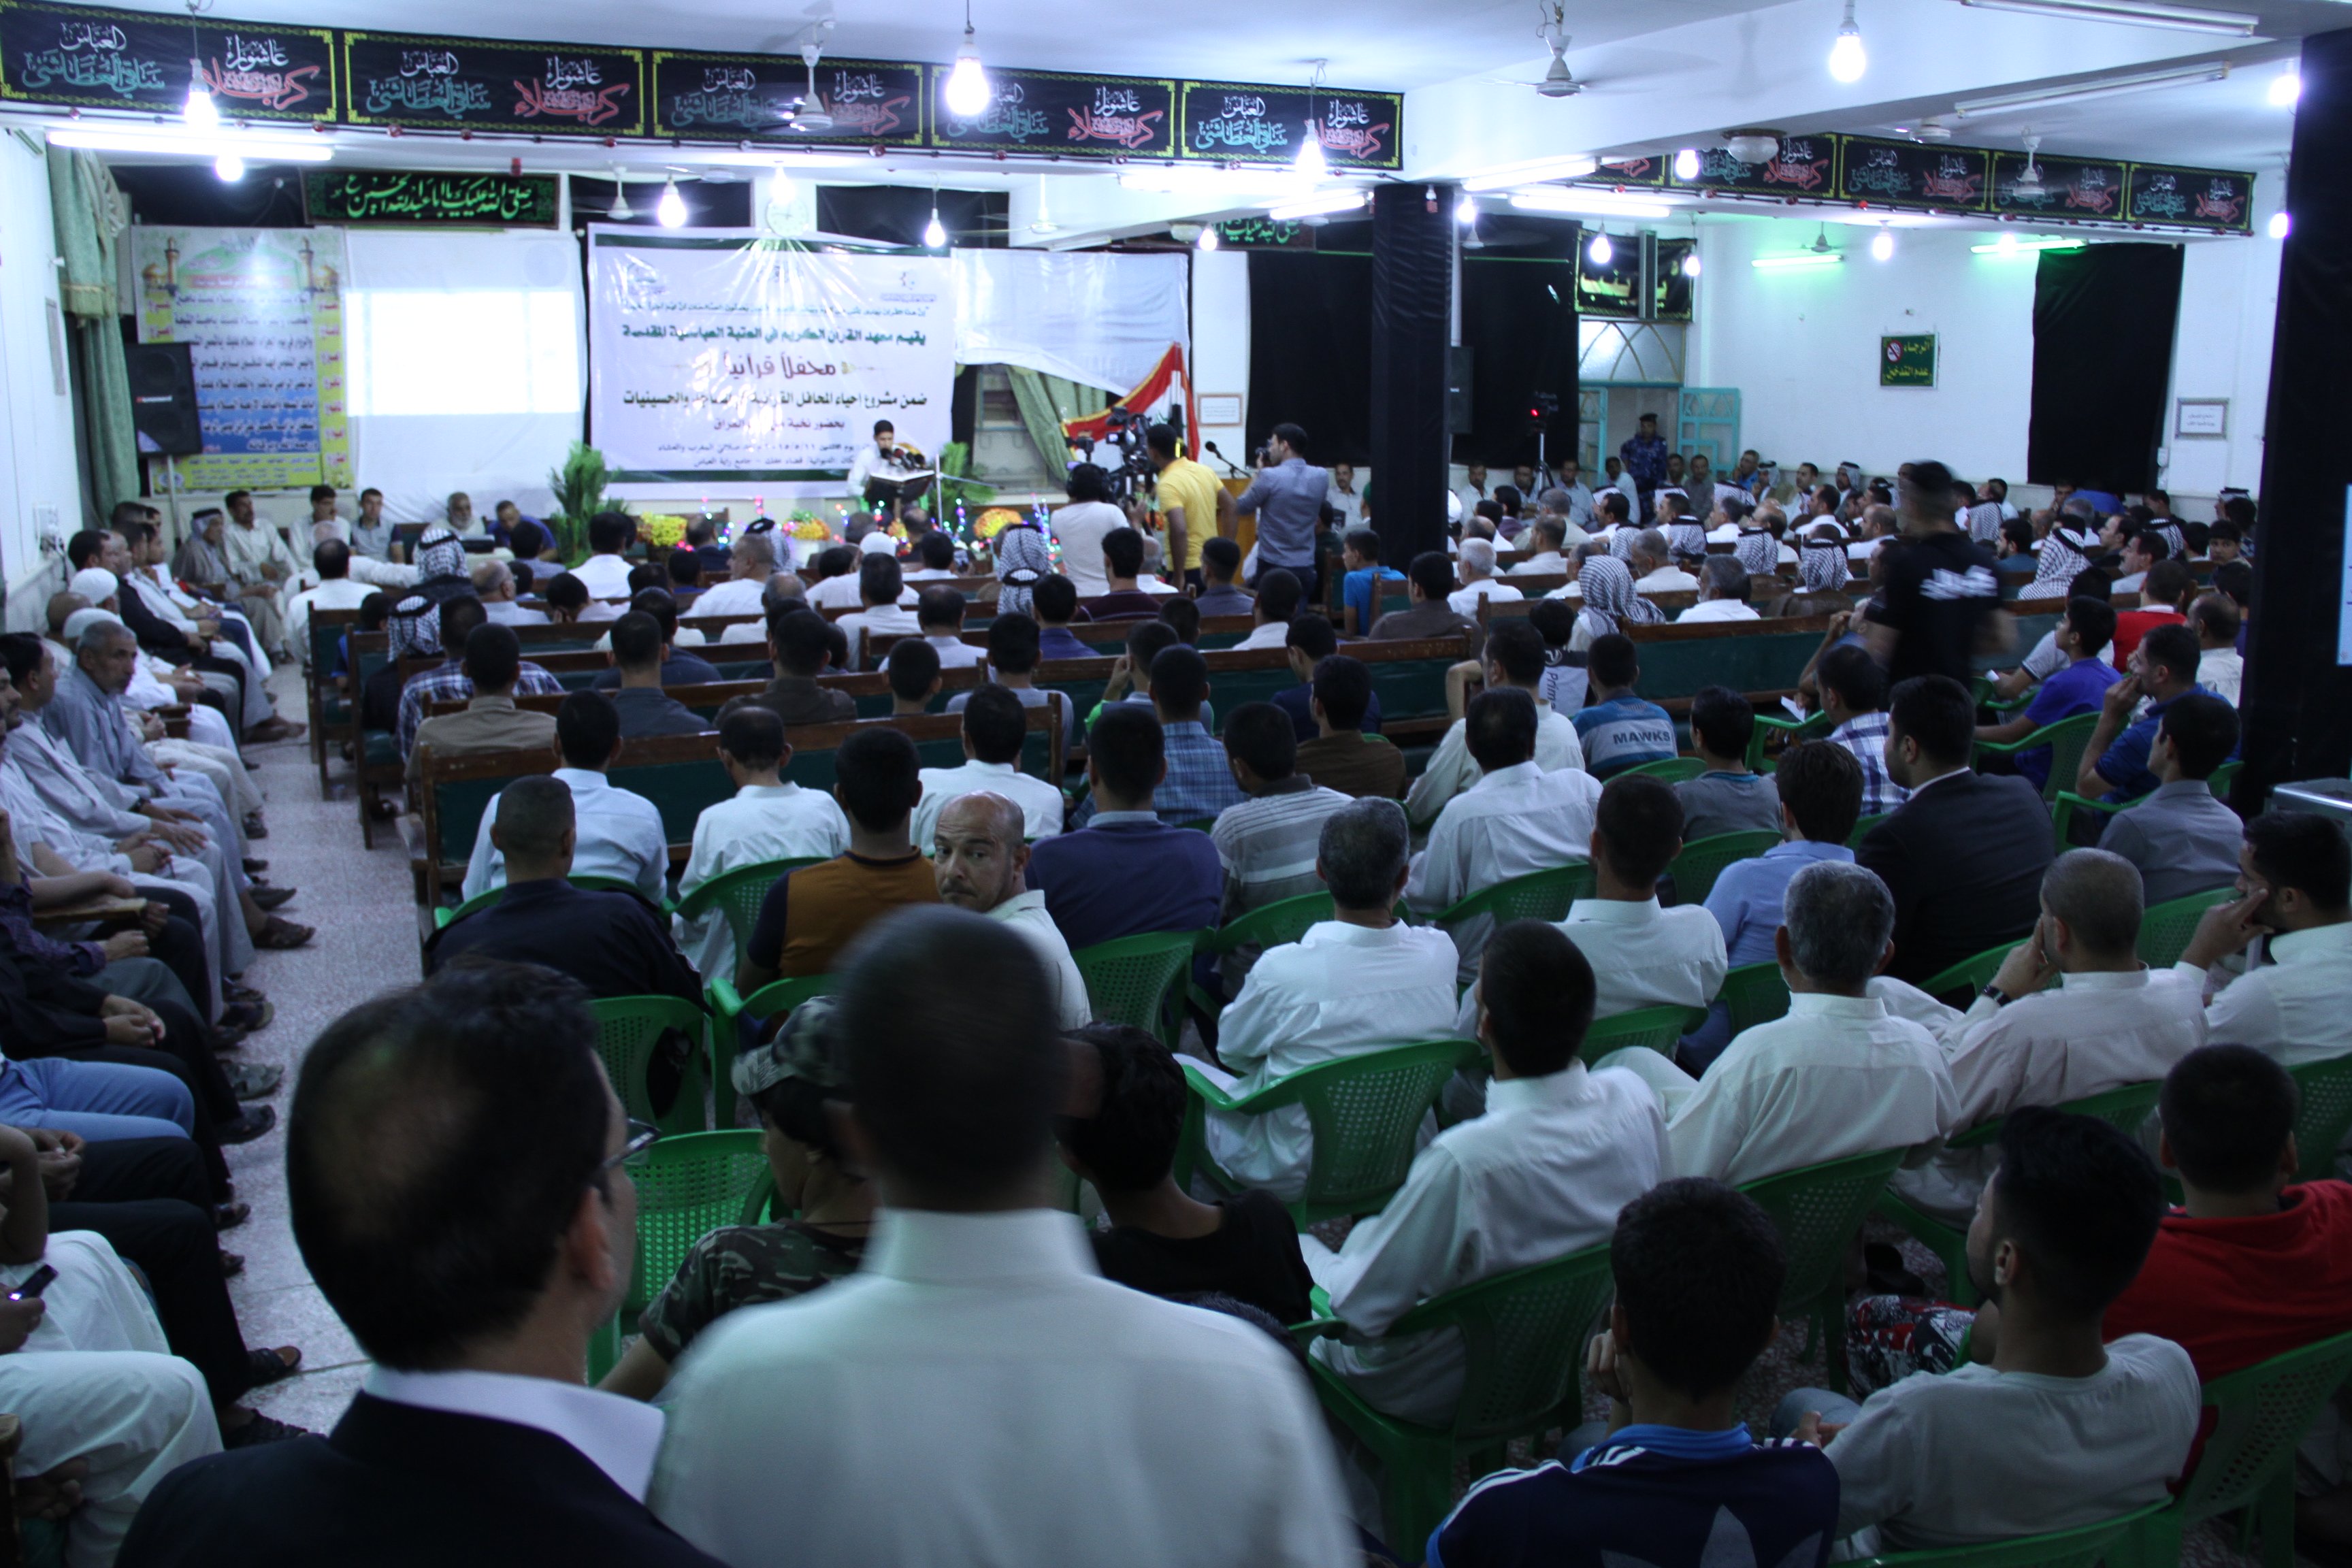 أقام معهد القرآن الكريم محفلًا قرآنياً مميزاً في قضاء عفك بمحافظة الديوانية.